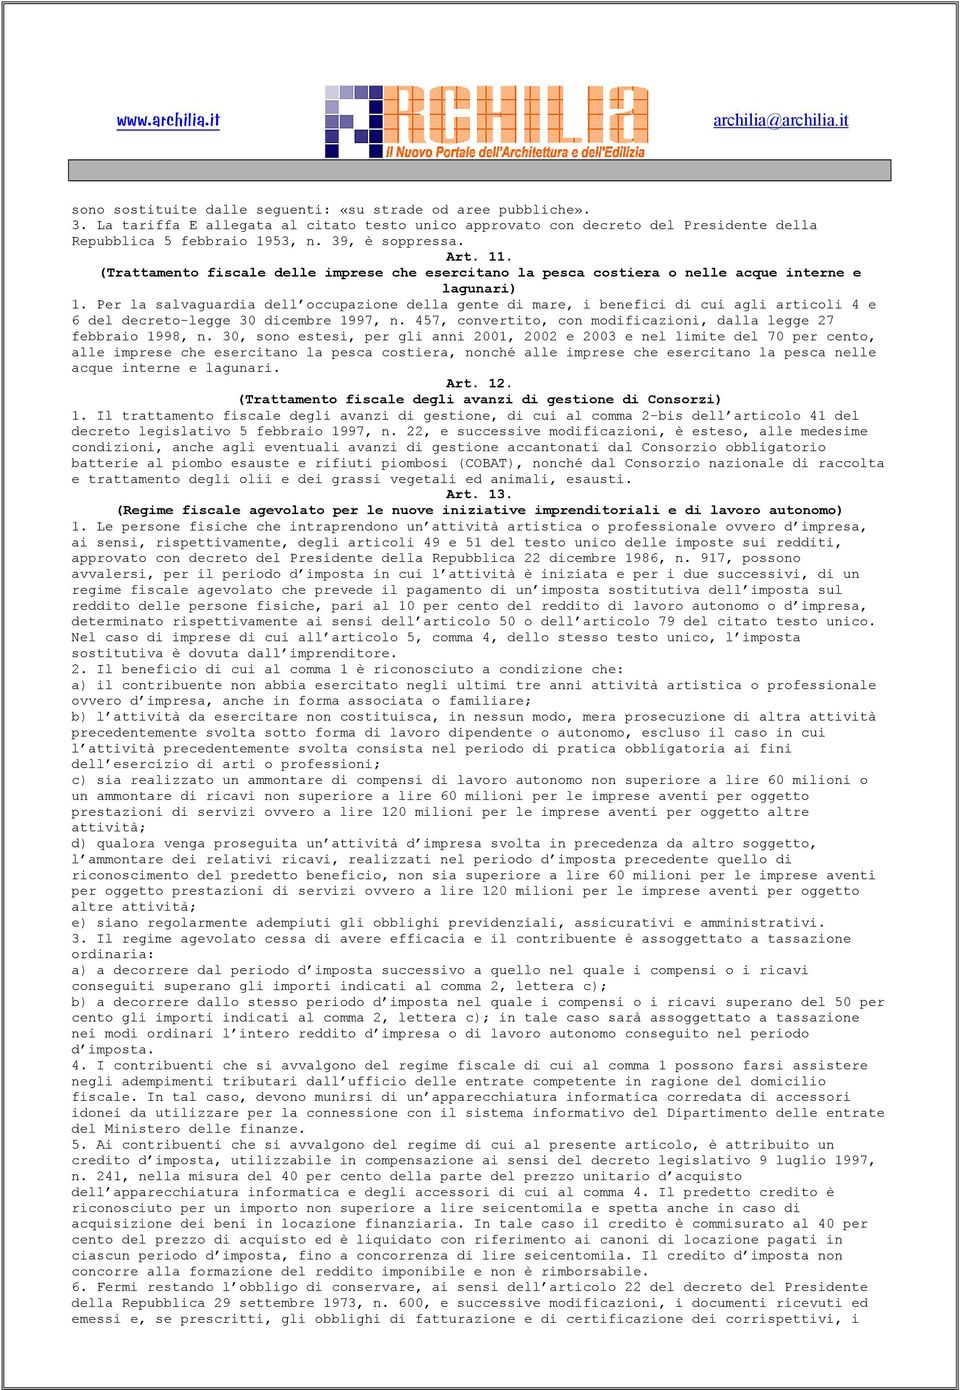 Per la salvaguardia dell occupazione della gente di mare, i benefici di cui agli articoli 4 e 6 del decreto-legge 30 dicembre 1997, n.